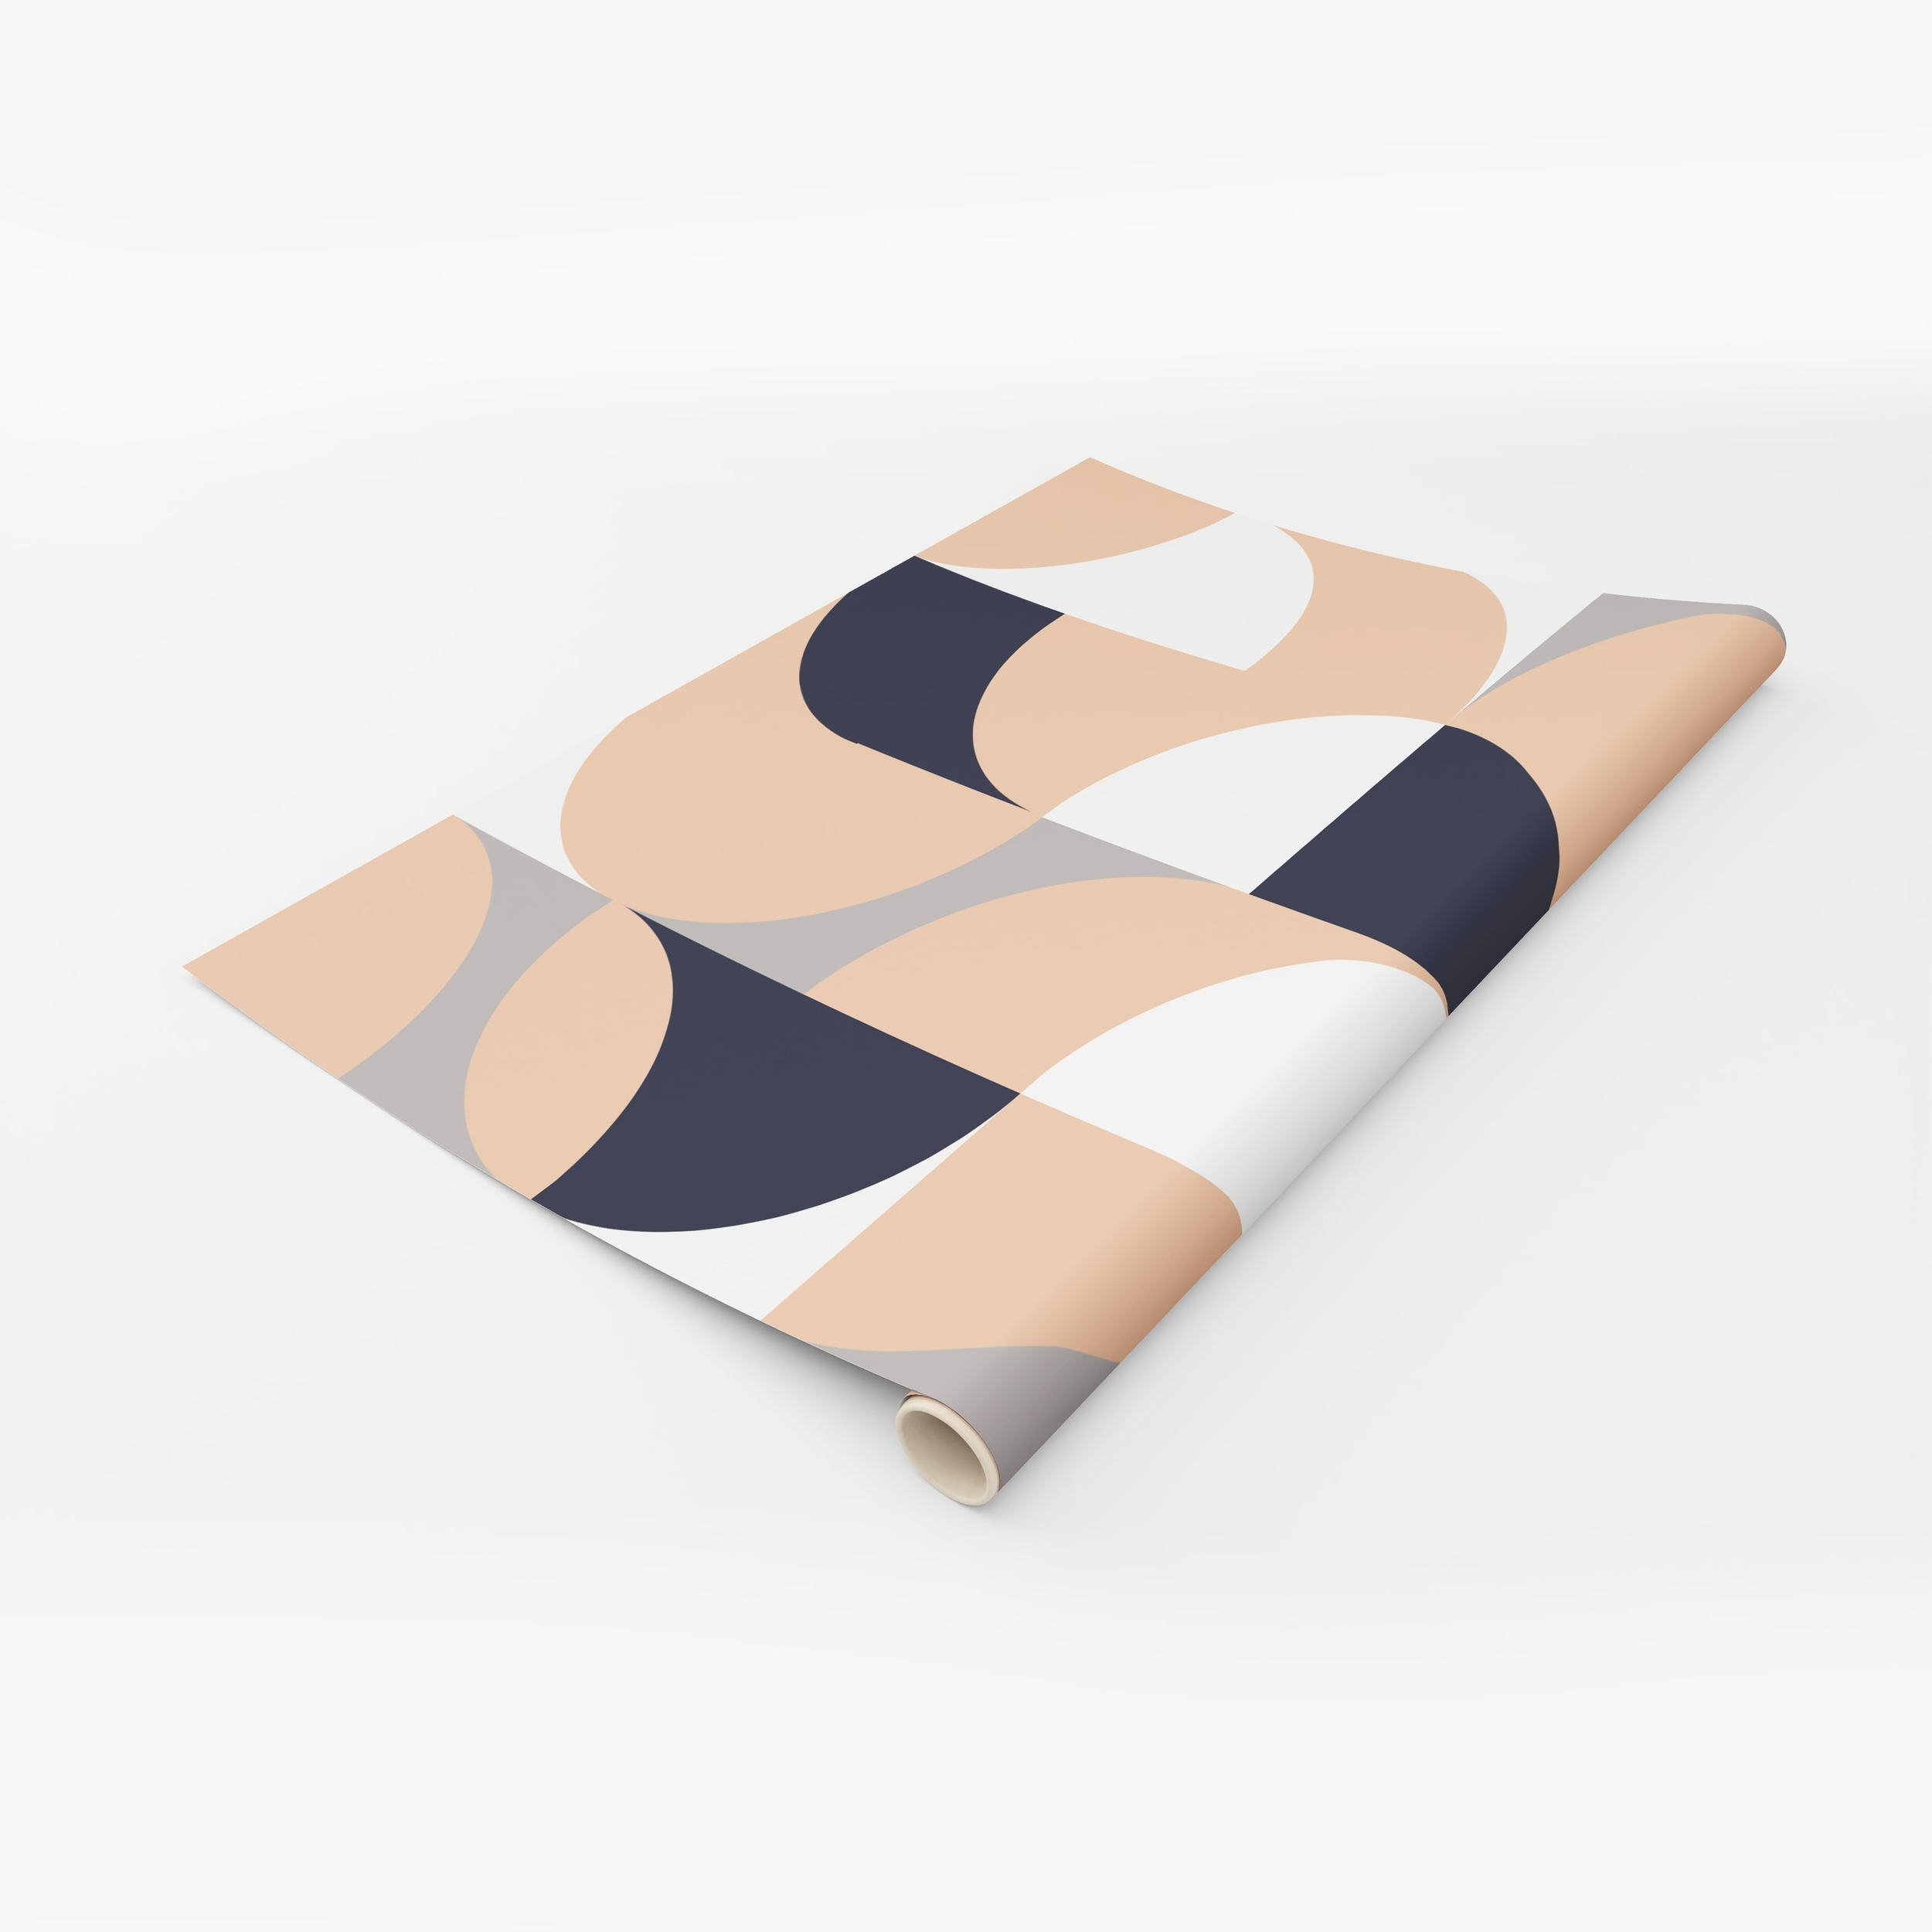 PP46-rouleau-papier-peint-adhesif-decoratif-revetement-vinyle-formes-géométriques-aléatoires-2-renovation-meuble-mur-min